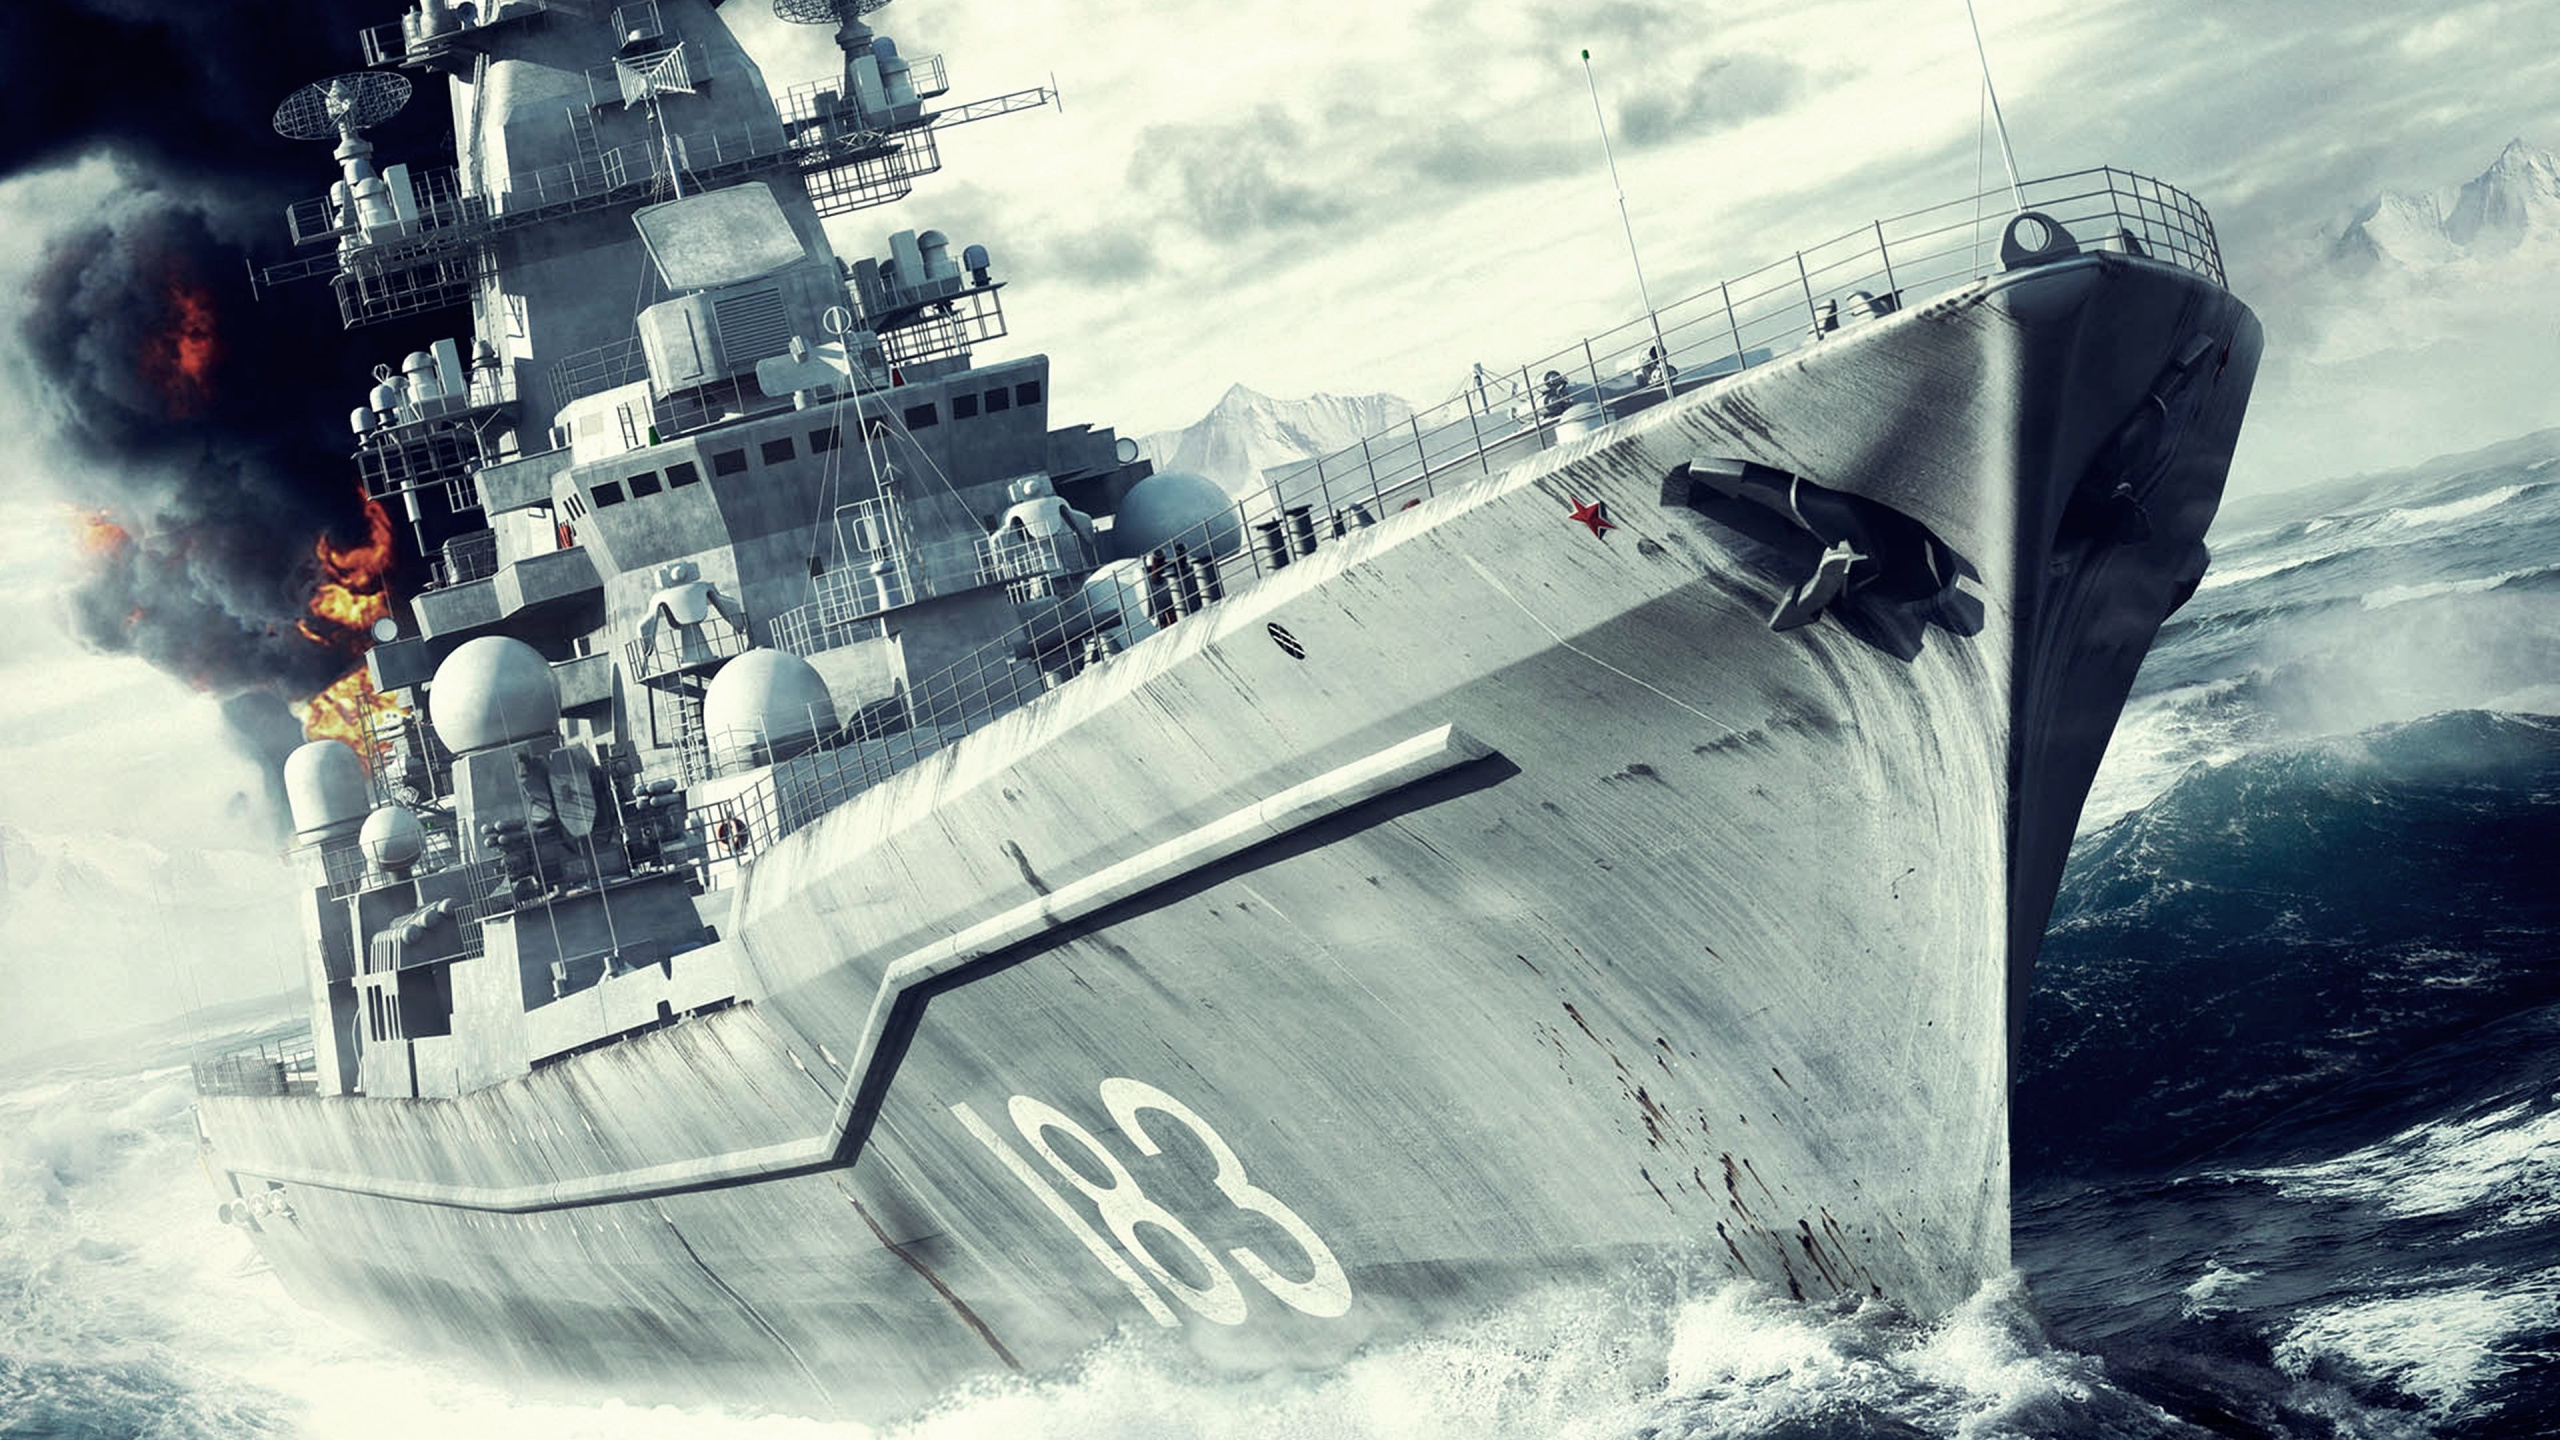 Battleship, Naval Ship, Warship, Battlecruiser, Destroyer. Wallpaper in 2560x1440 Resolution